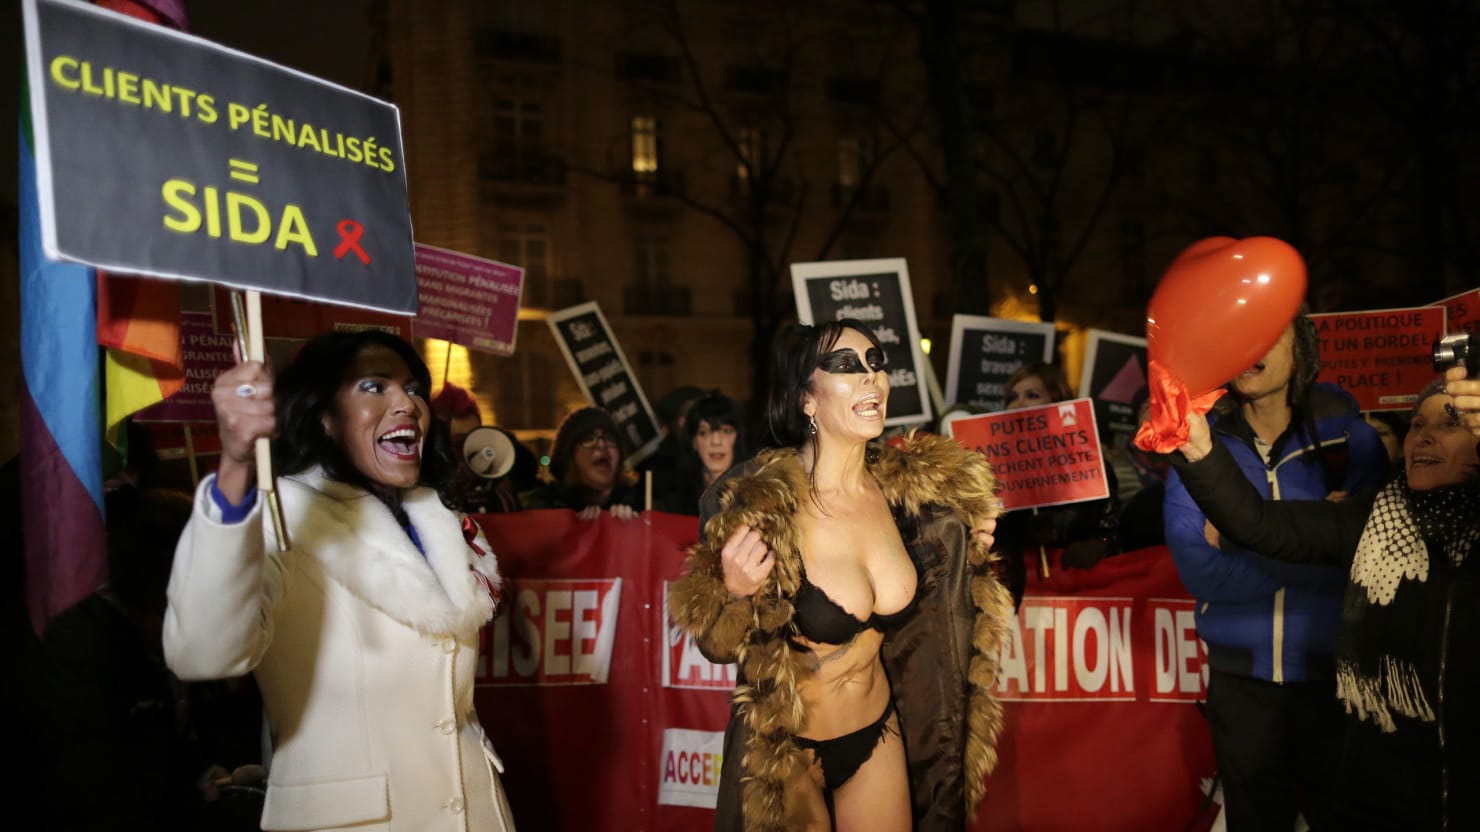 Frances New Prostitution Law Targets Johns Ignites National Debate